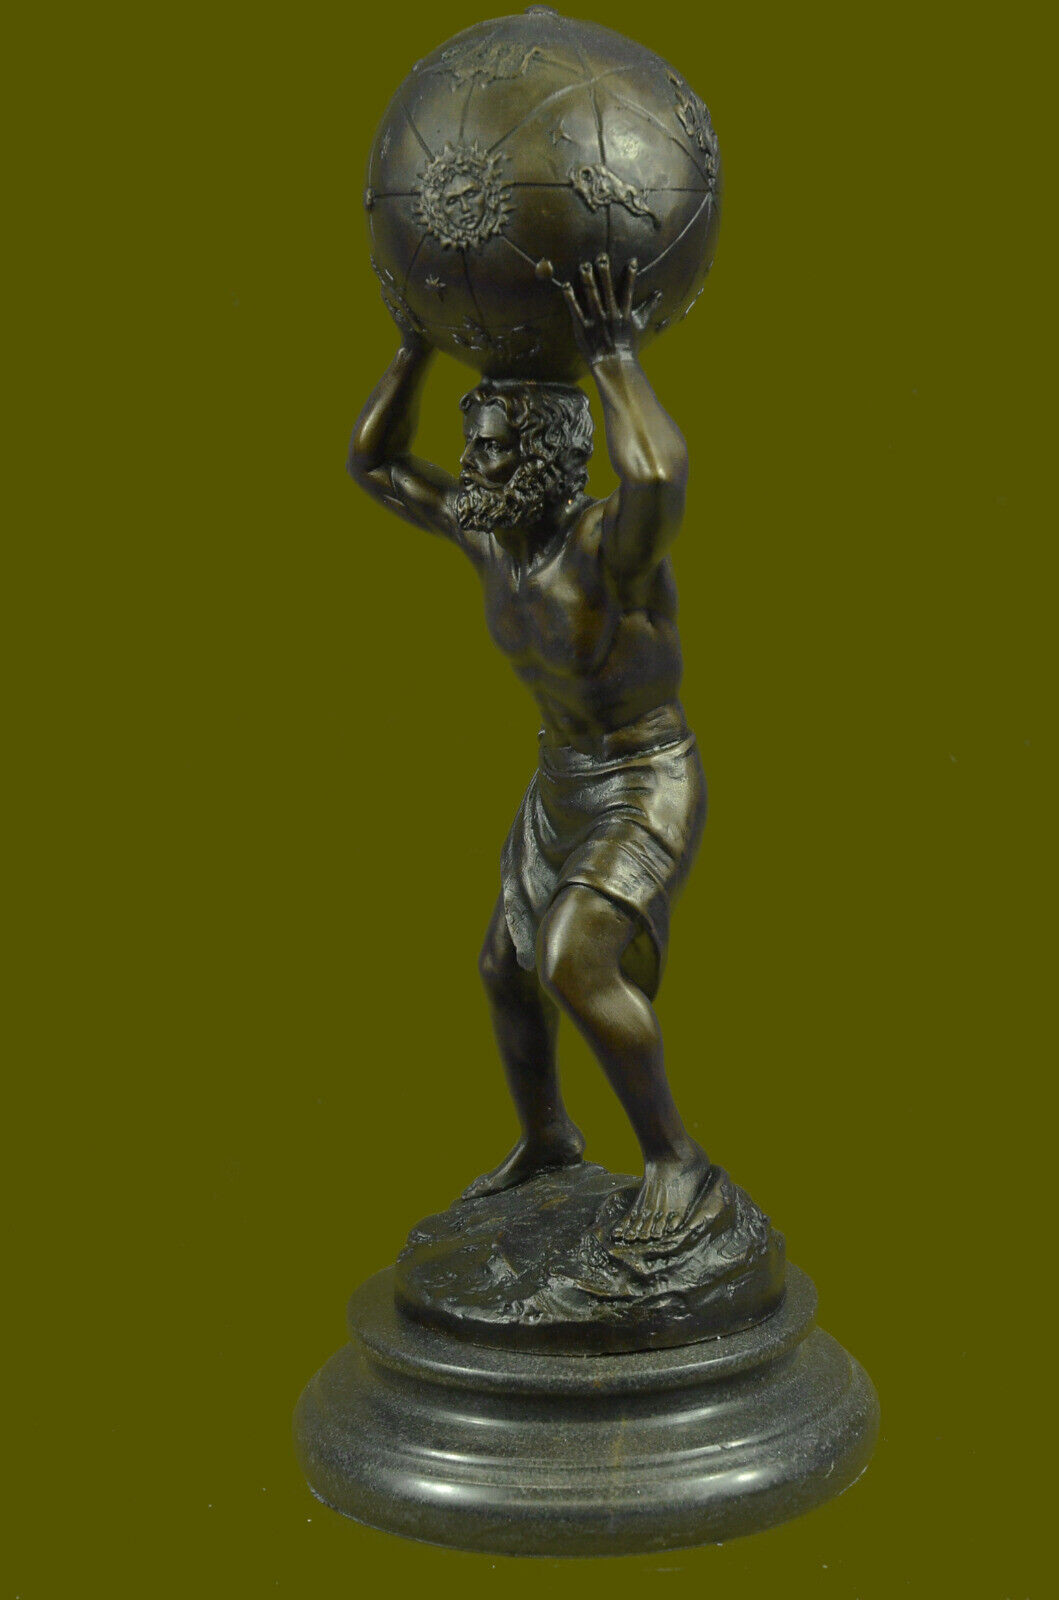 100% Bronze Atlas Holding Up Celestial Sphere Statue/Sculpture Art Deco Nouveau